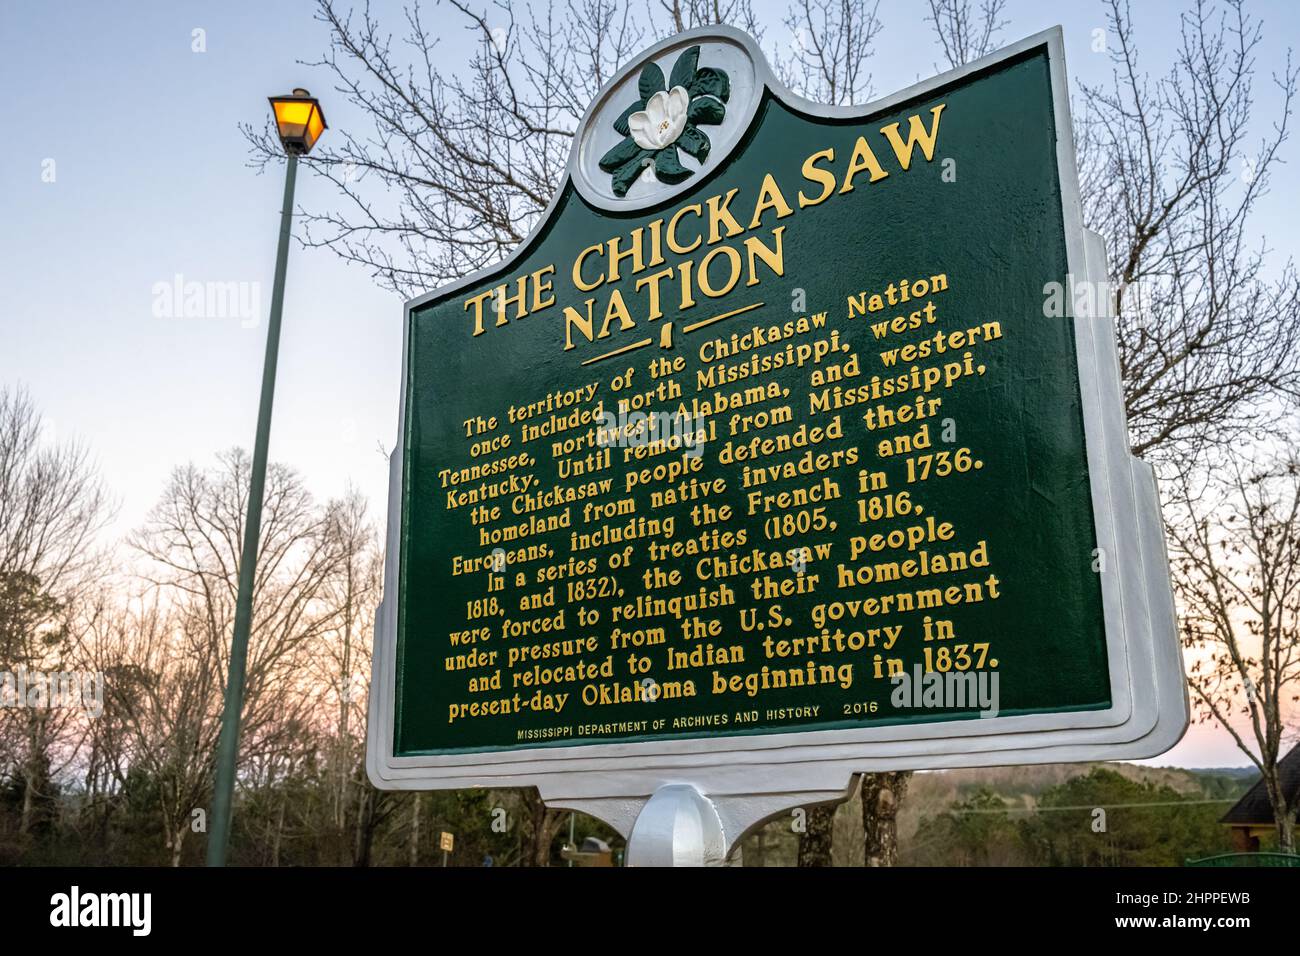 Chickasaw Nation historisches Markierungszeichen am Mississippi Welcome Center entlang der I-22 in der Nähe der Alabama/Mississippi Grenze. (USA) Stockfoto